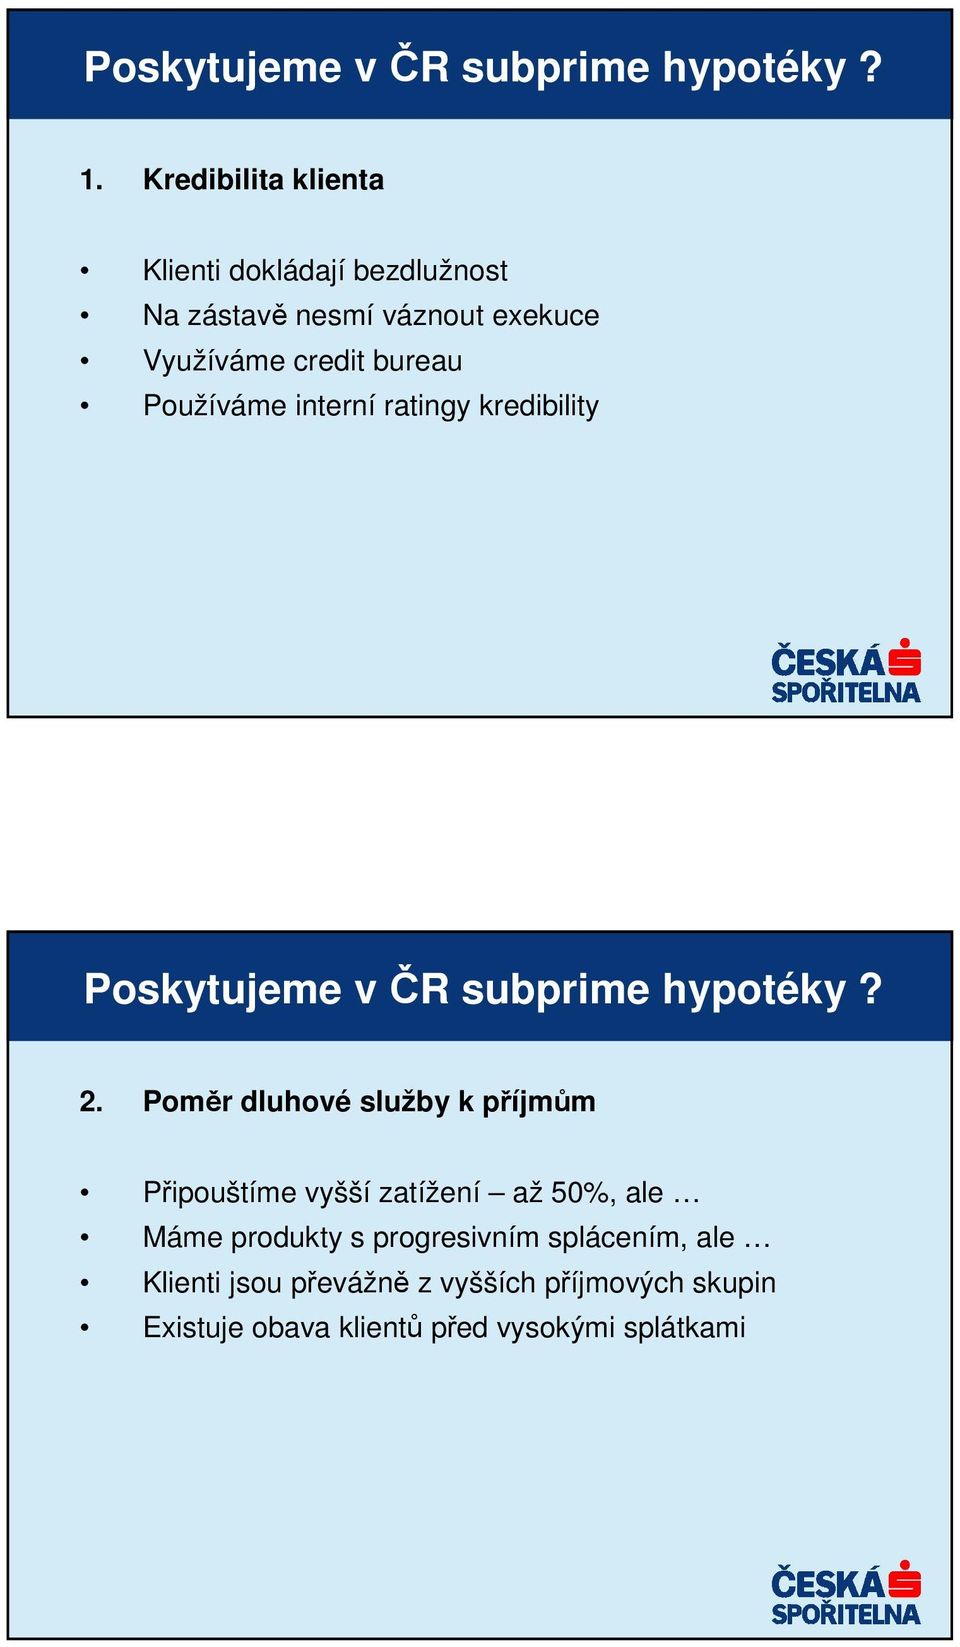 Používáme interní ratingy kredibility Poskytujeme v ČR subprime hypotéky? 2.